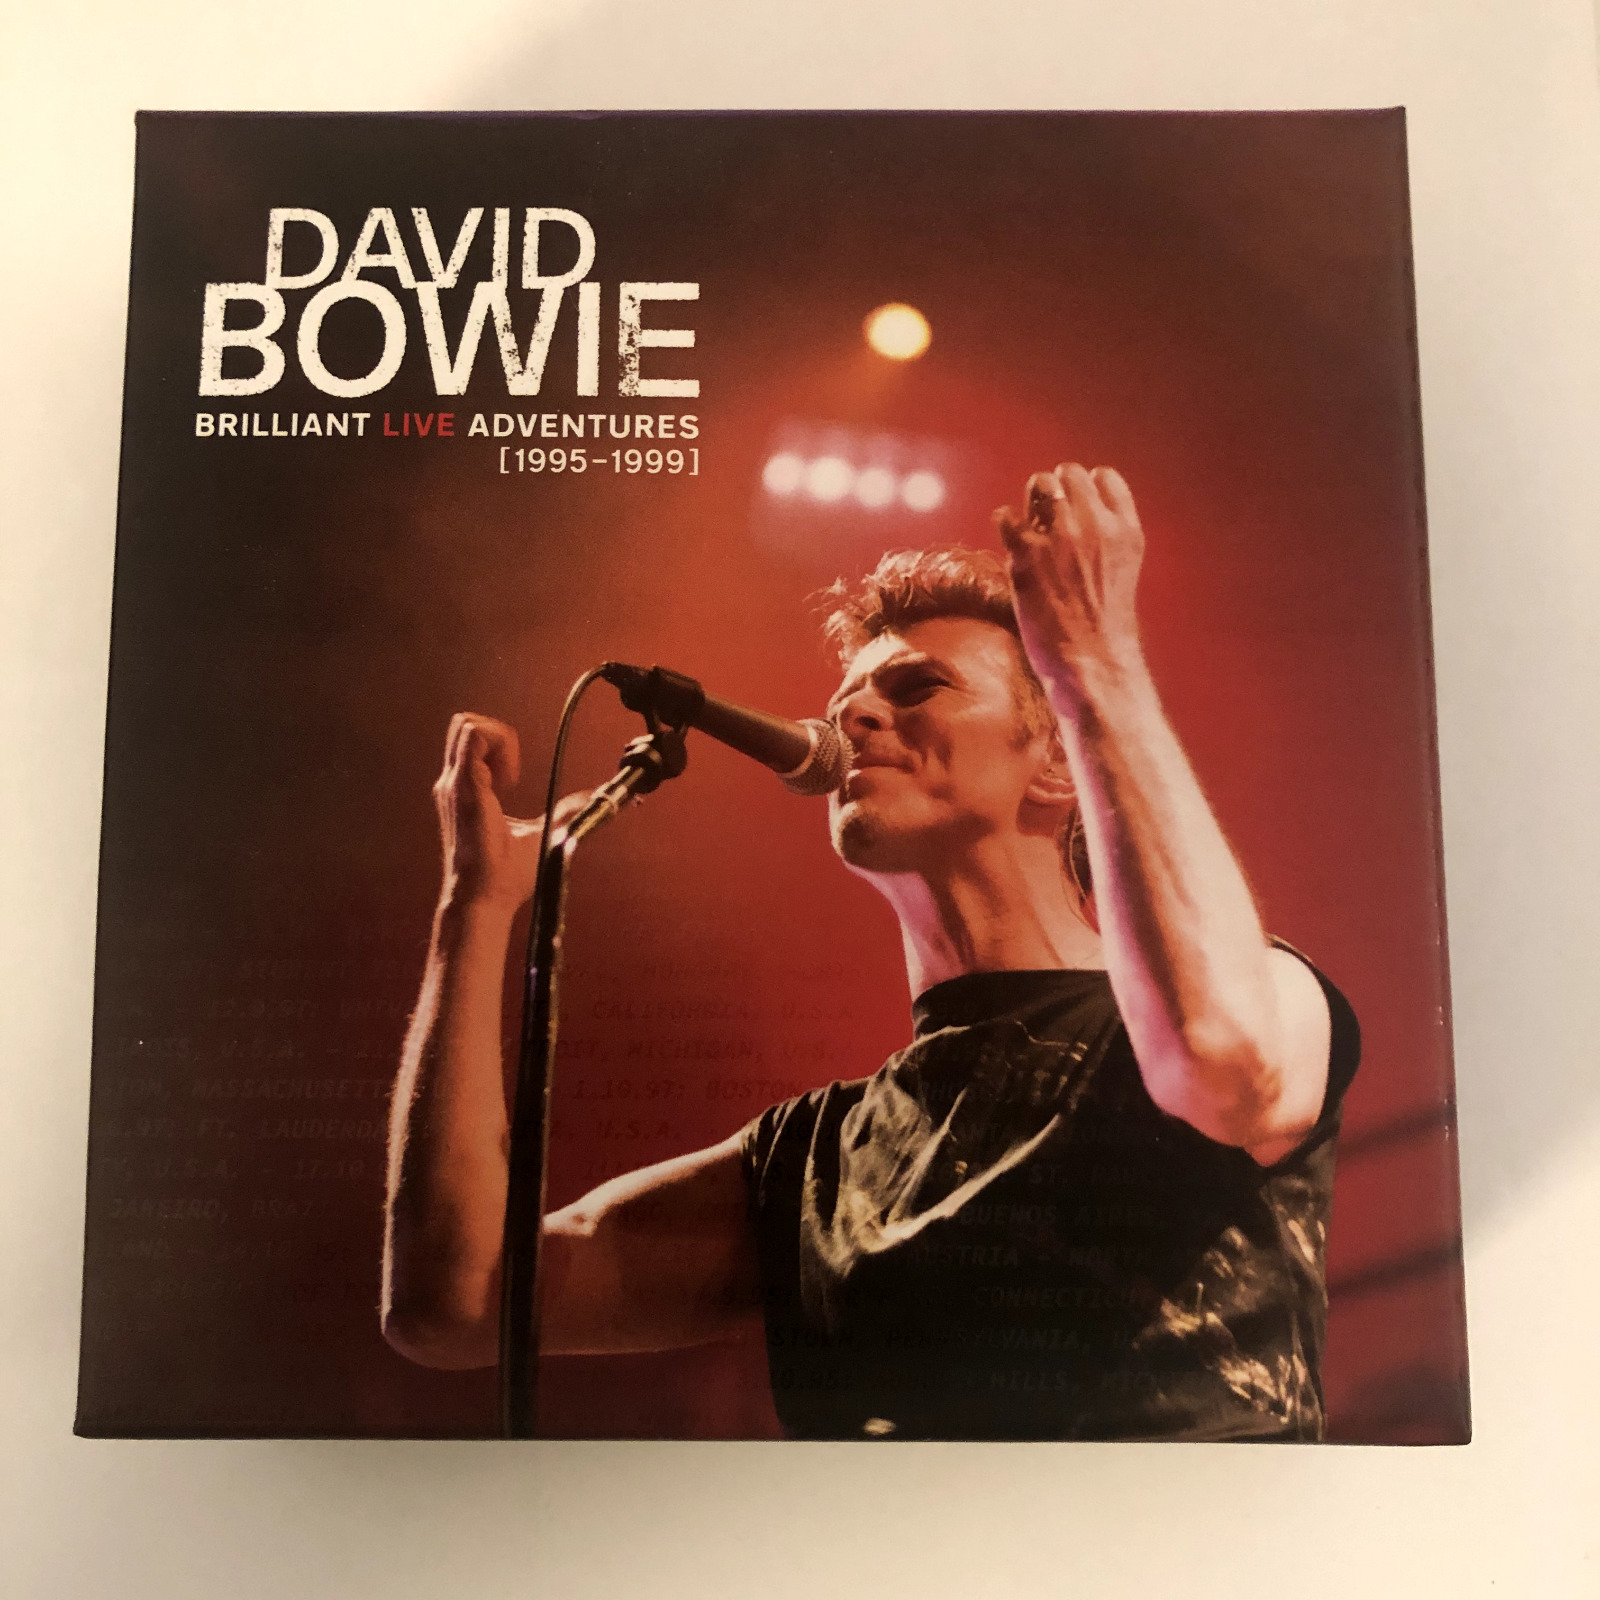 David Bowie Brilliant Live Adventures [1995-1999] (6-CDs) Complete Set + Box